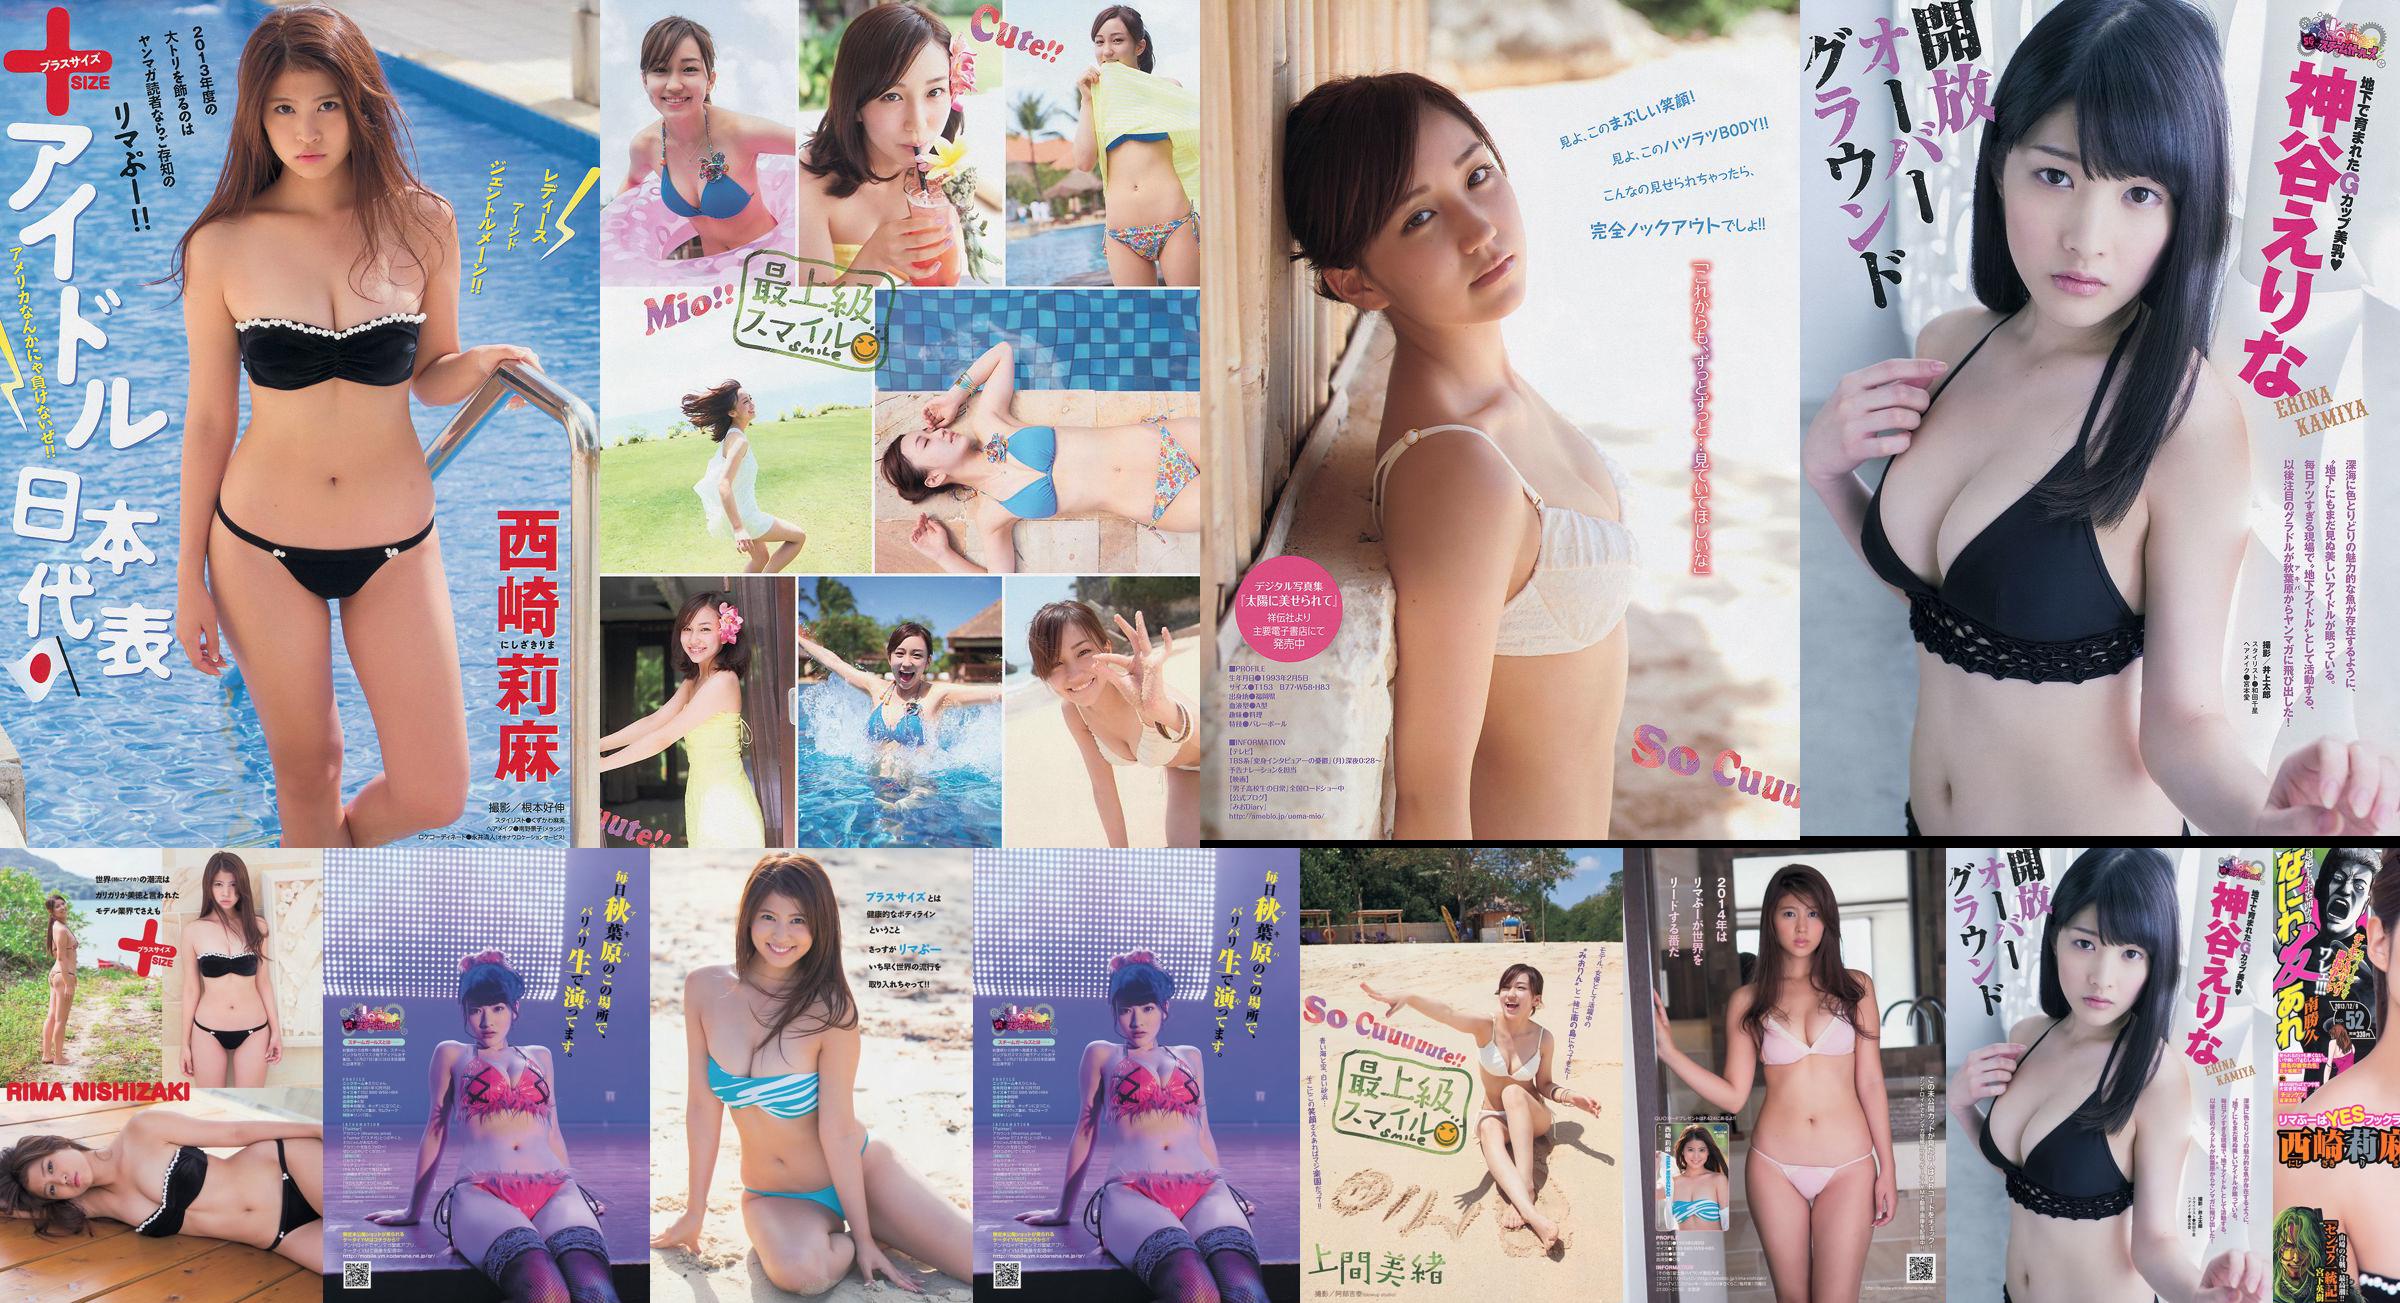 [Young Magazine] Rima Nishizaki Mio Uema Erina Kamiya 2013 No.52 Photo Moshi No.a410a7 Page 2